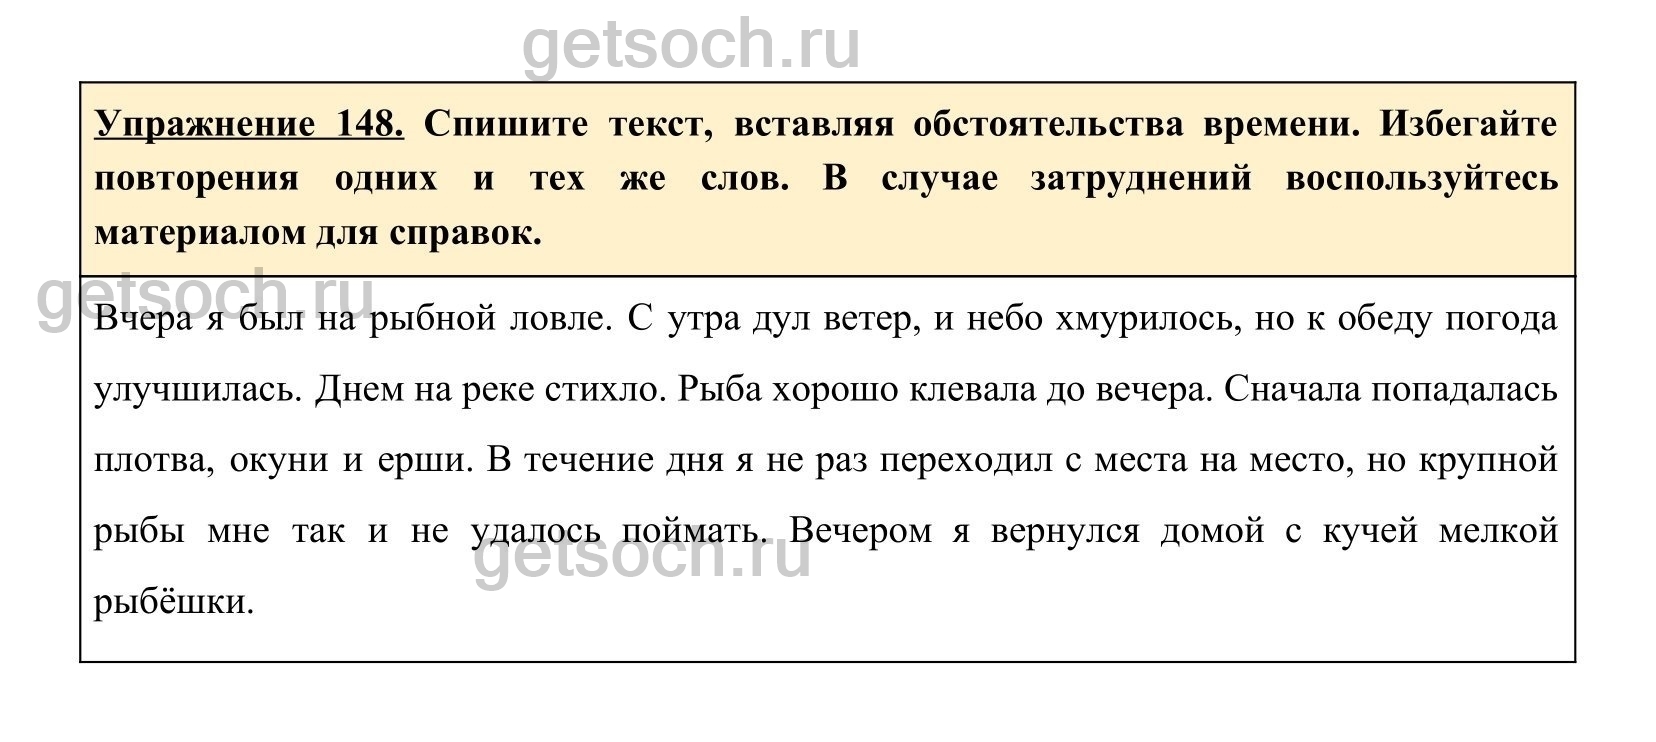 Русский язык 8 класс самое главное. Упражнение 148 по русскому языку 2 класс. Русский язык восьмой класс страница 76 упражнение 148. Какое есть прилагательное в русском языке на странице 85 упражнение 148.